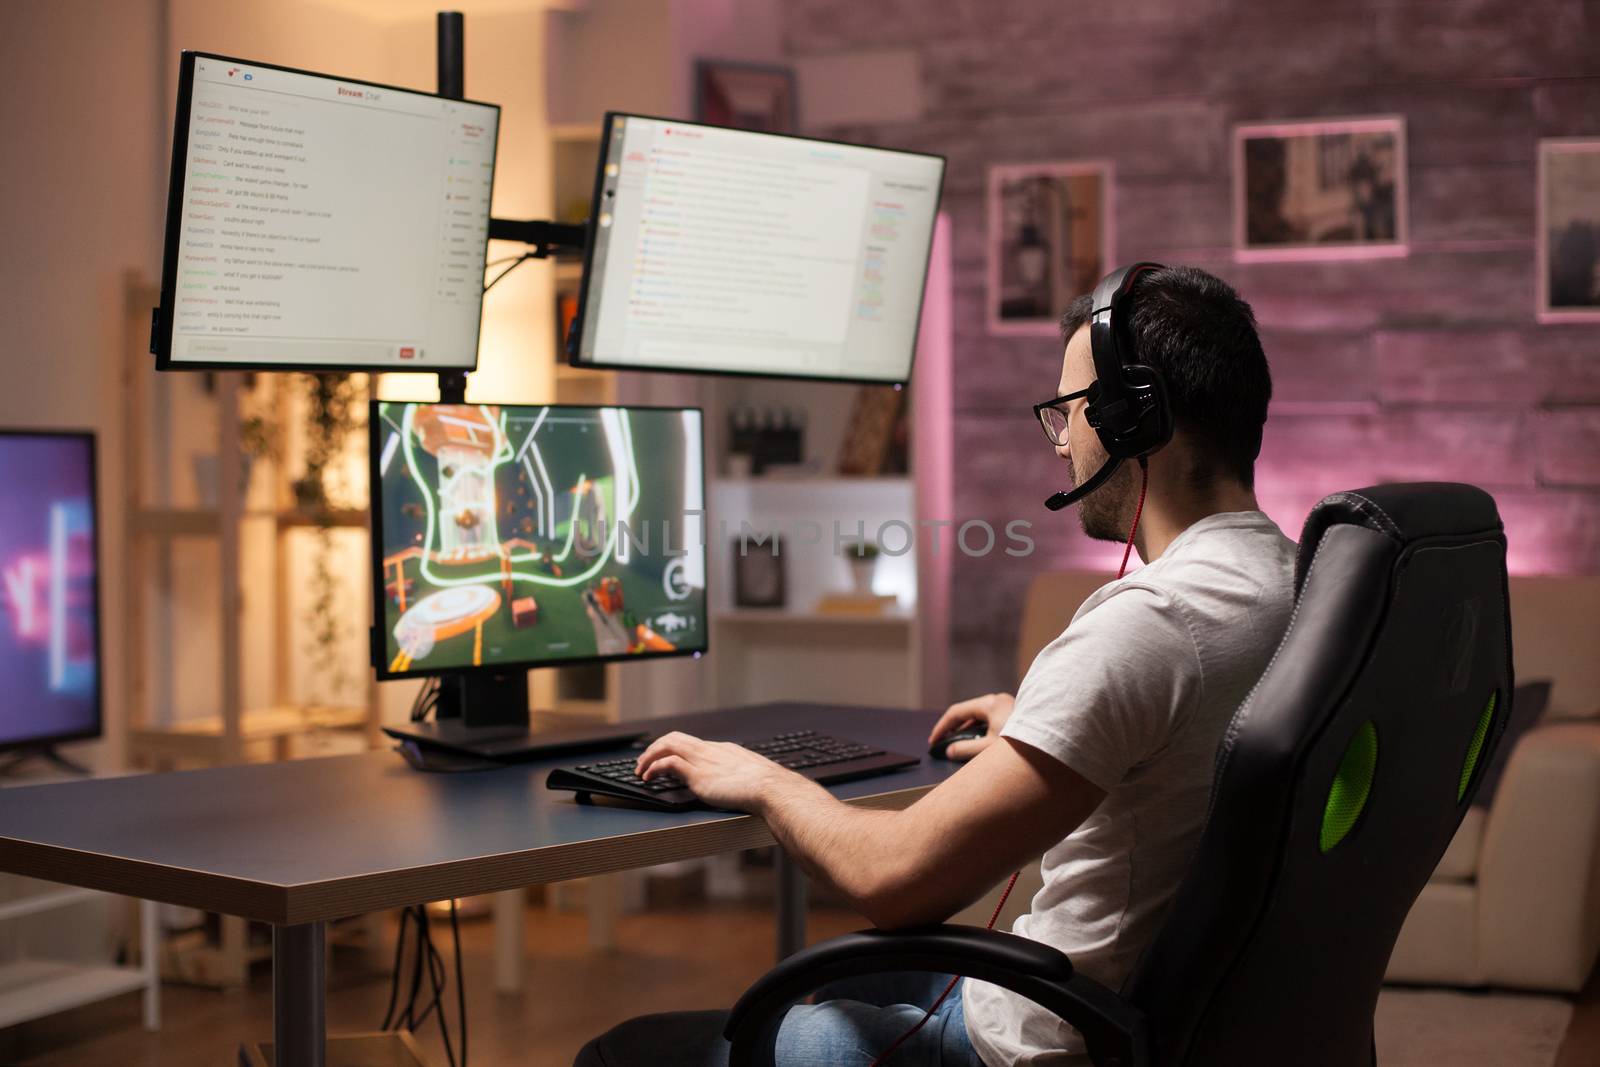 Man wearing headphones in a room with neon light by DCStudio